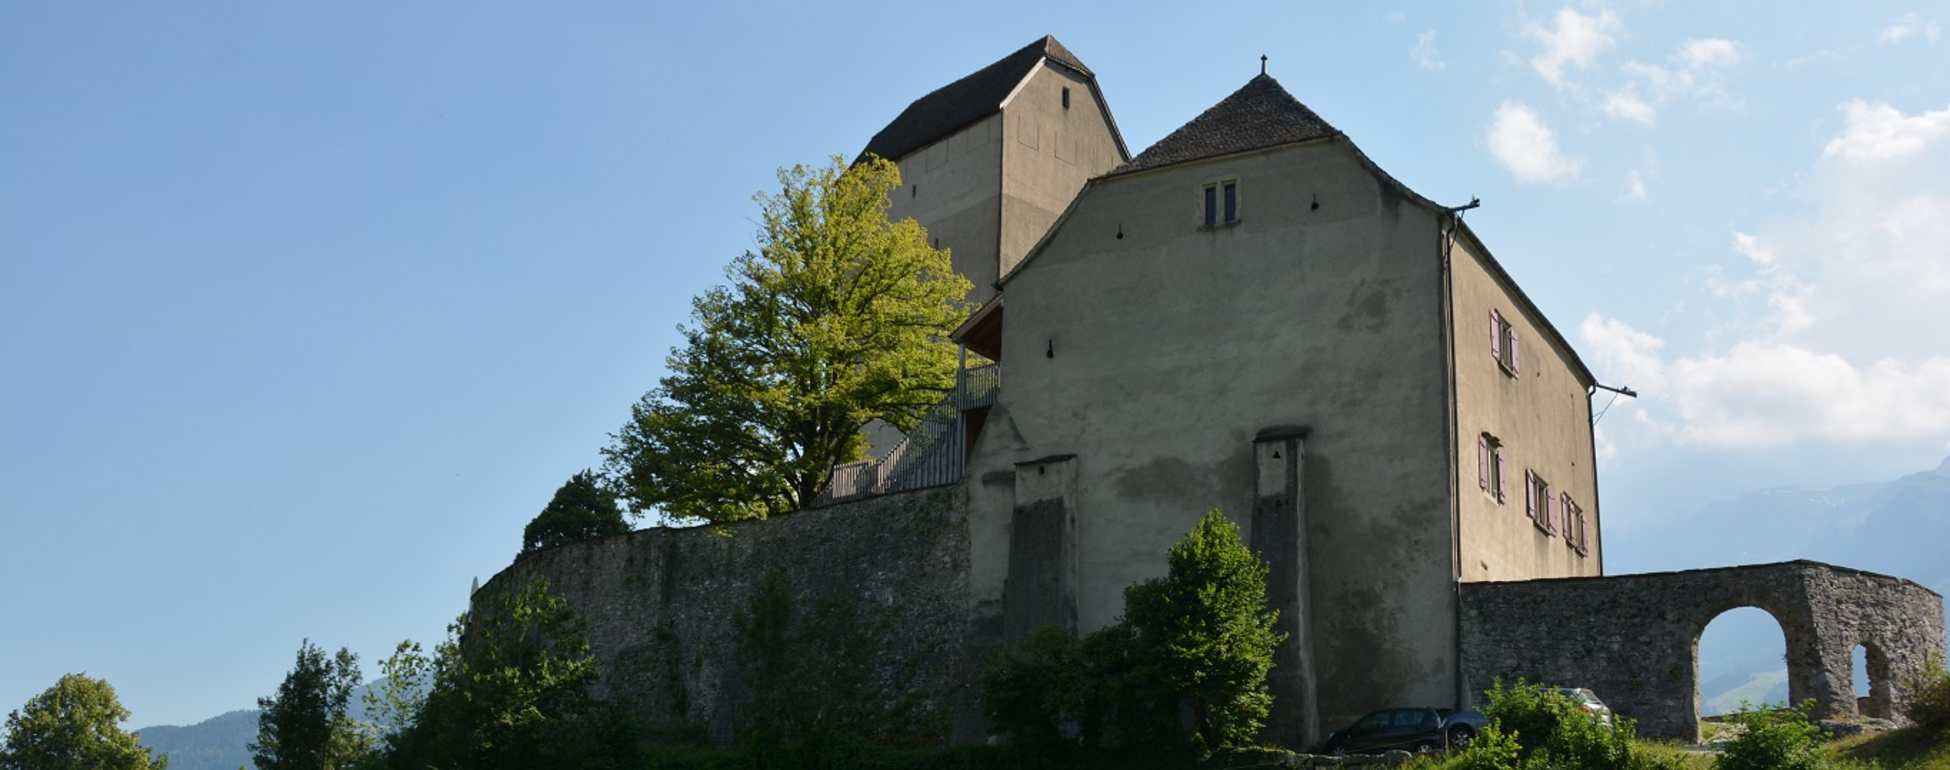 Château de Sargans